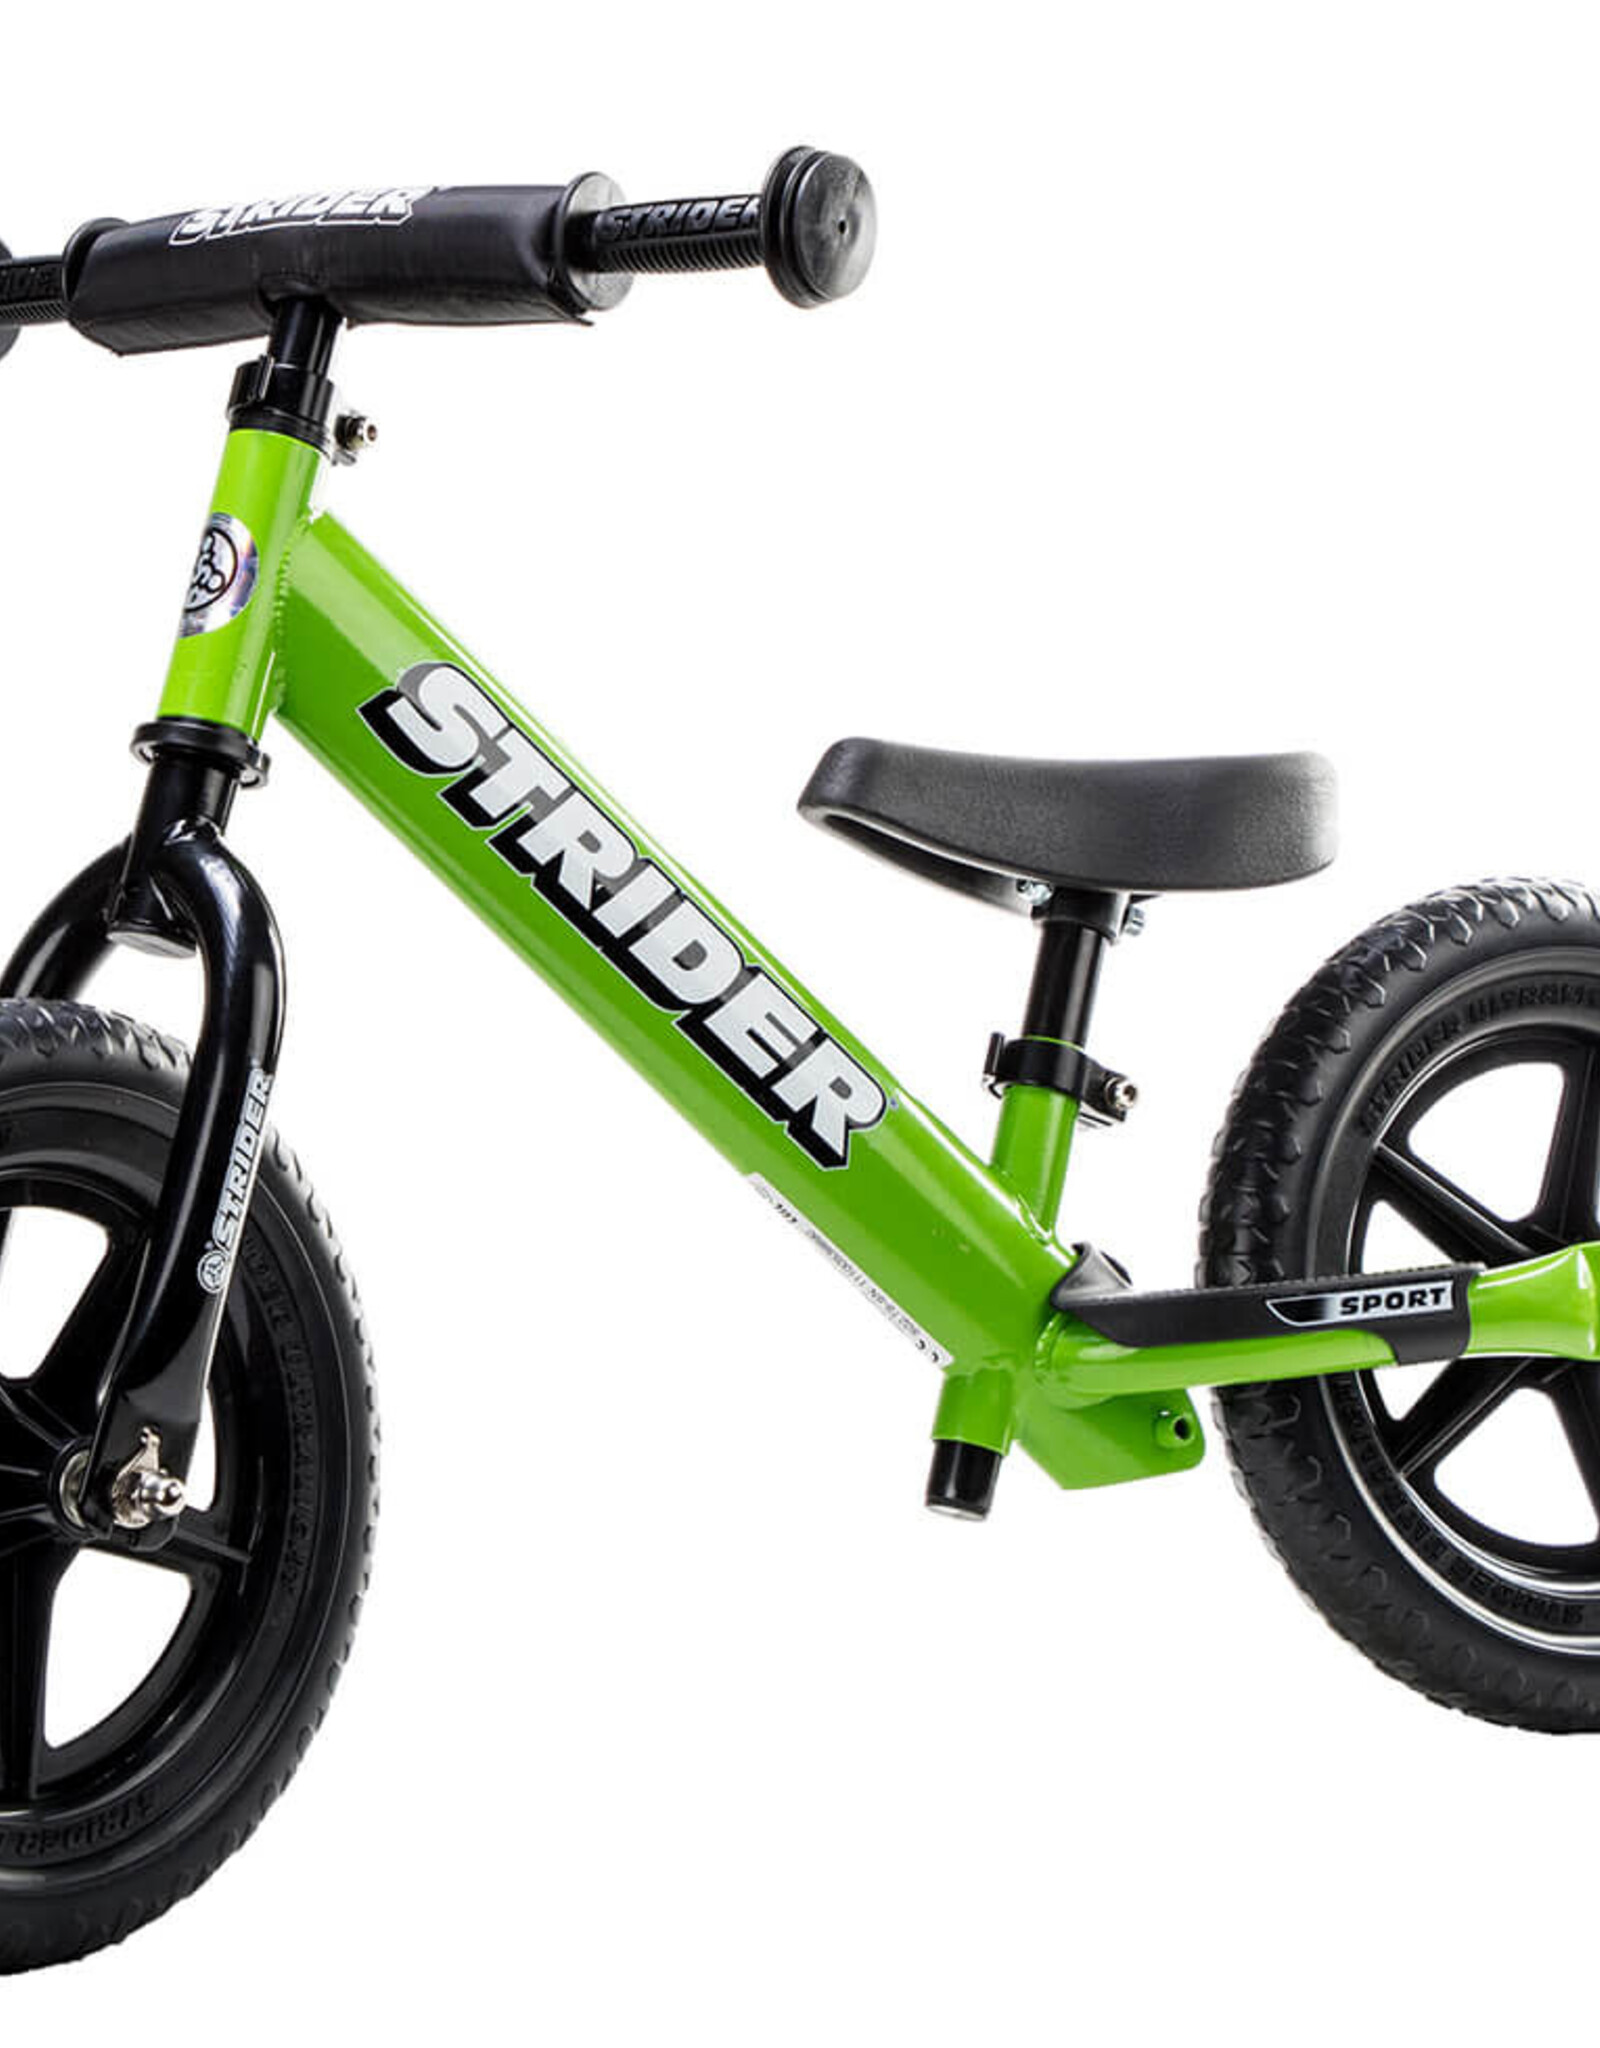 STRIDER Strider 12 Sport Balance Bike - Green 18 months-5 Years